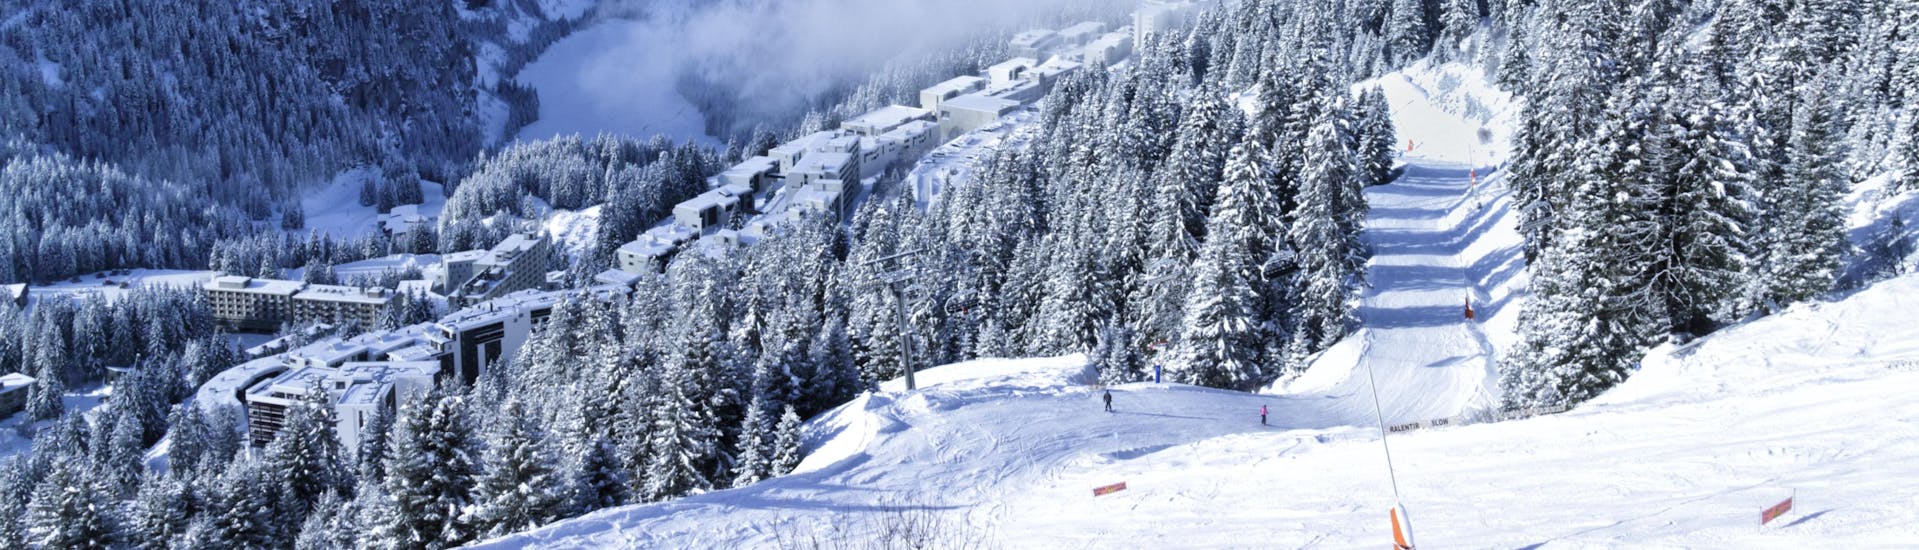 Ein Blick über die verschneite Winterlandschaft der Region Grand Massif, wo örtliche Skischulen ihre Skikurse durchführen.